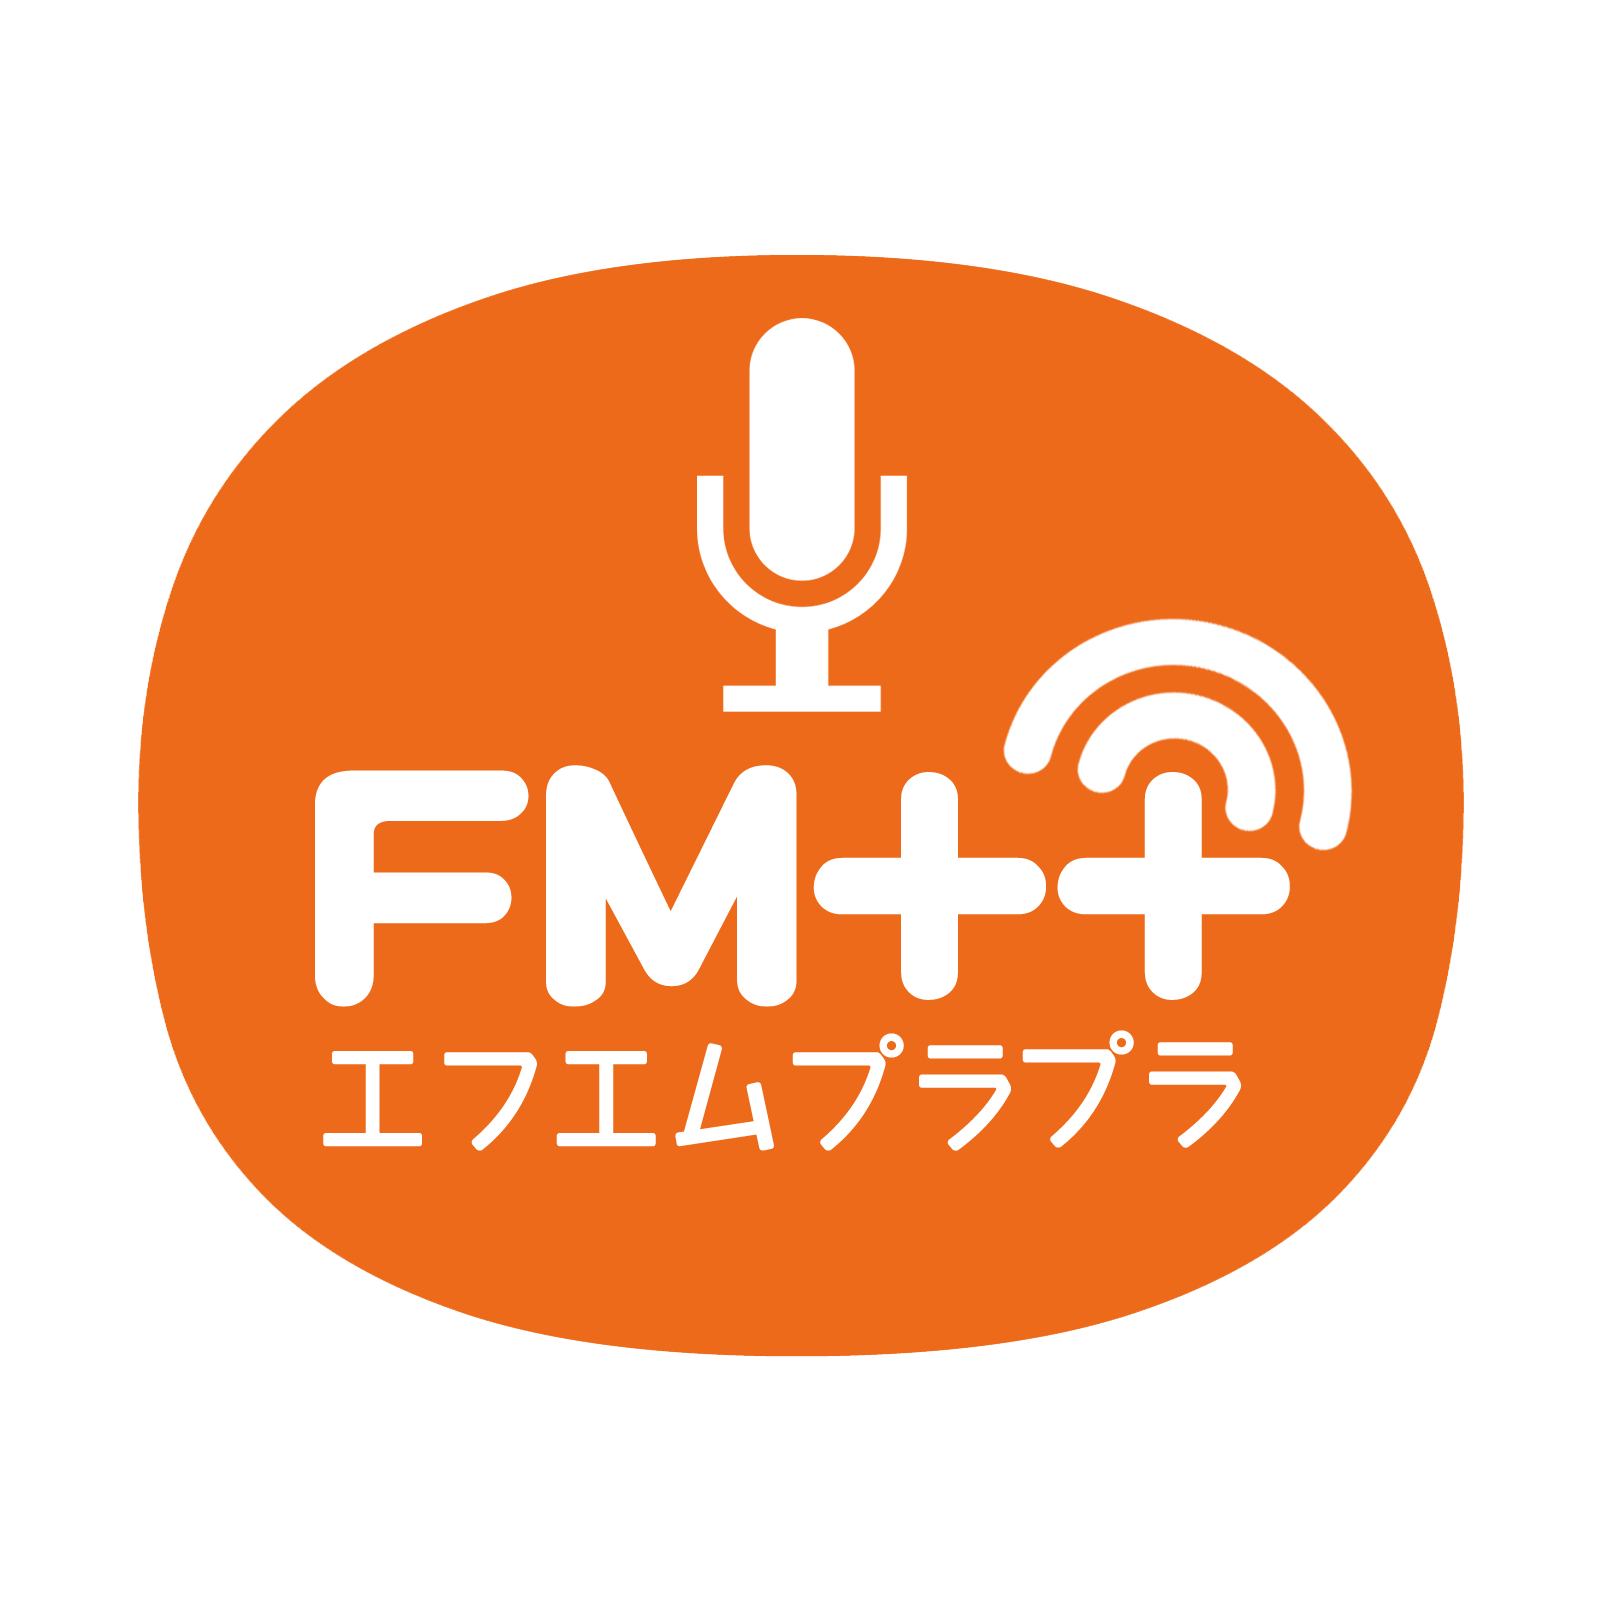 FM++ エフエムプラプラ